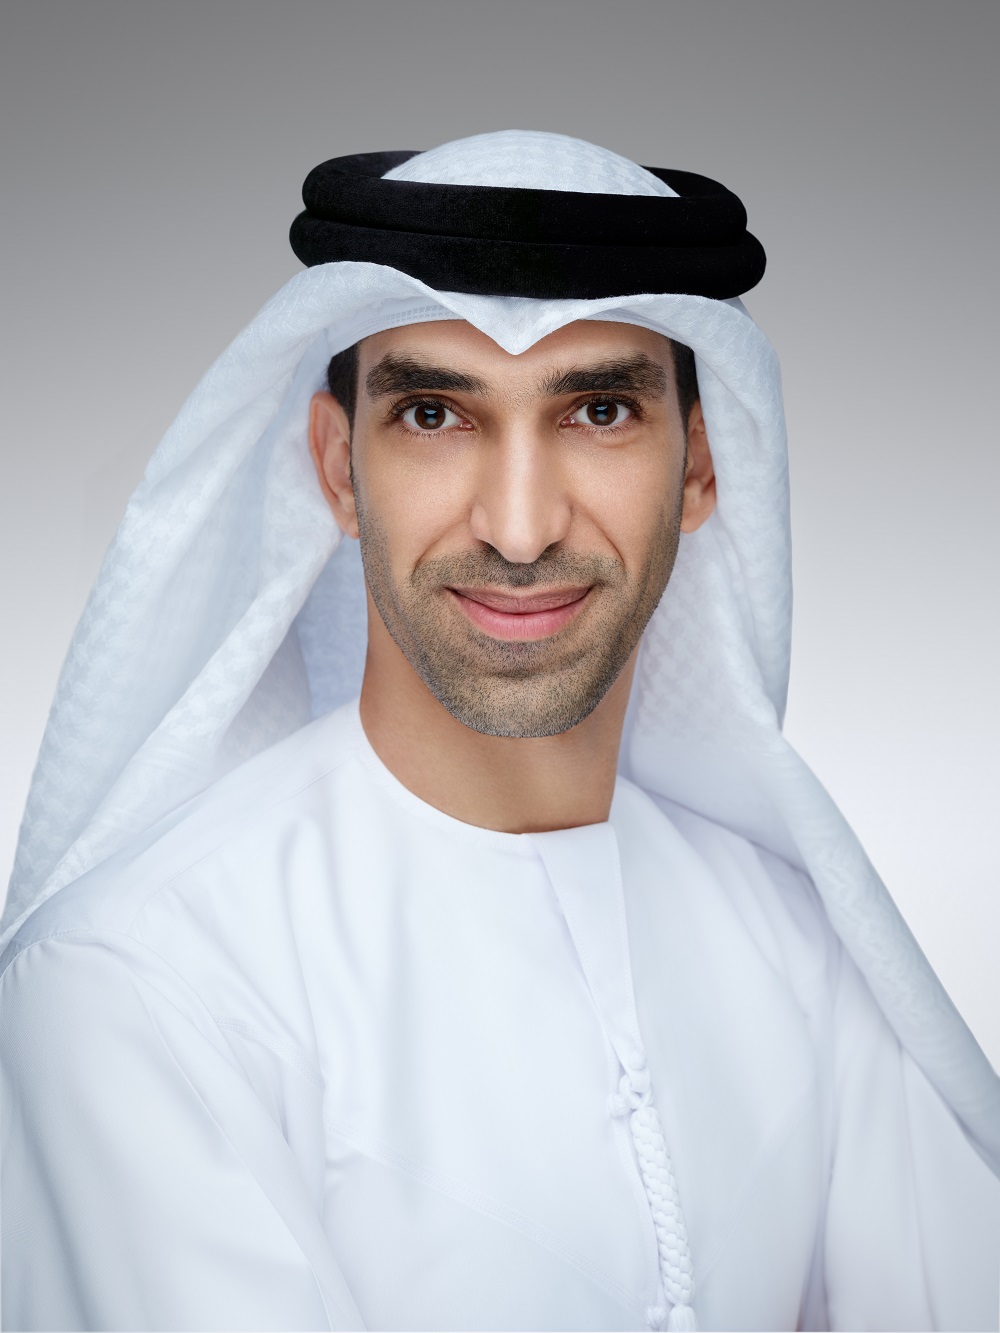 His Excellency Dr. ani bin Ahmed Al Zeyoudi